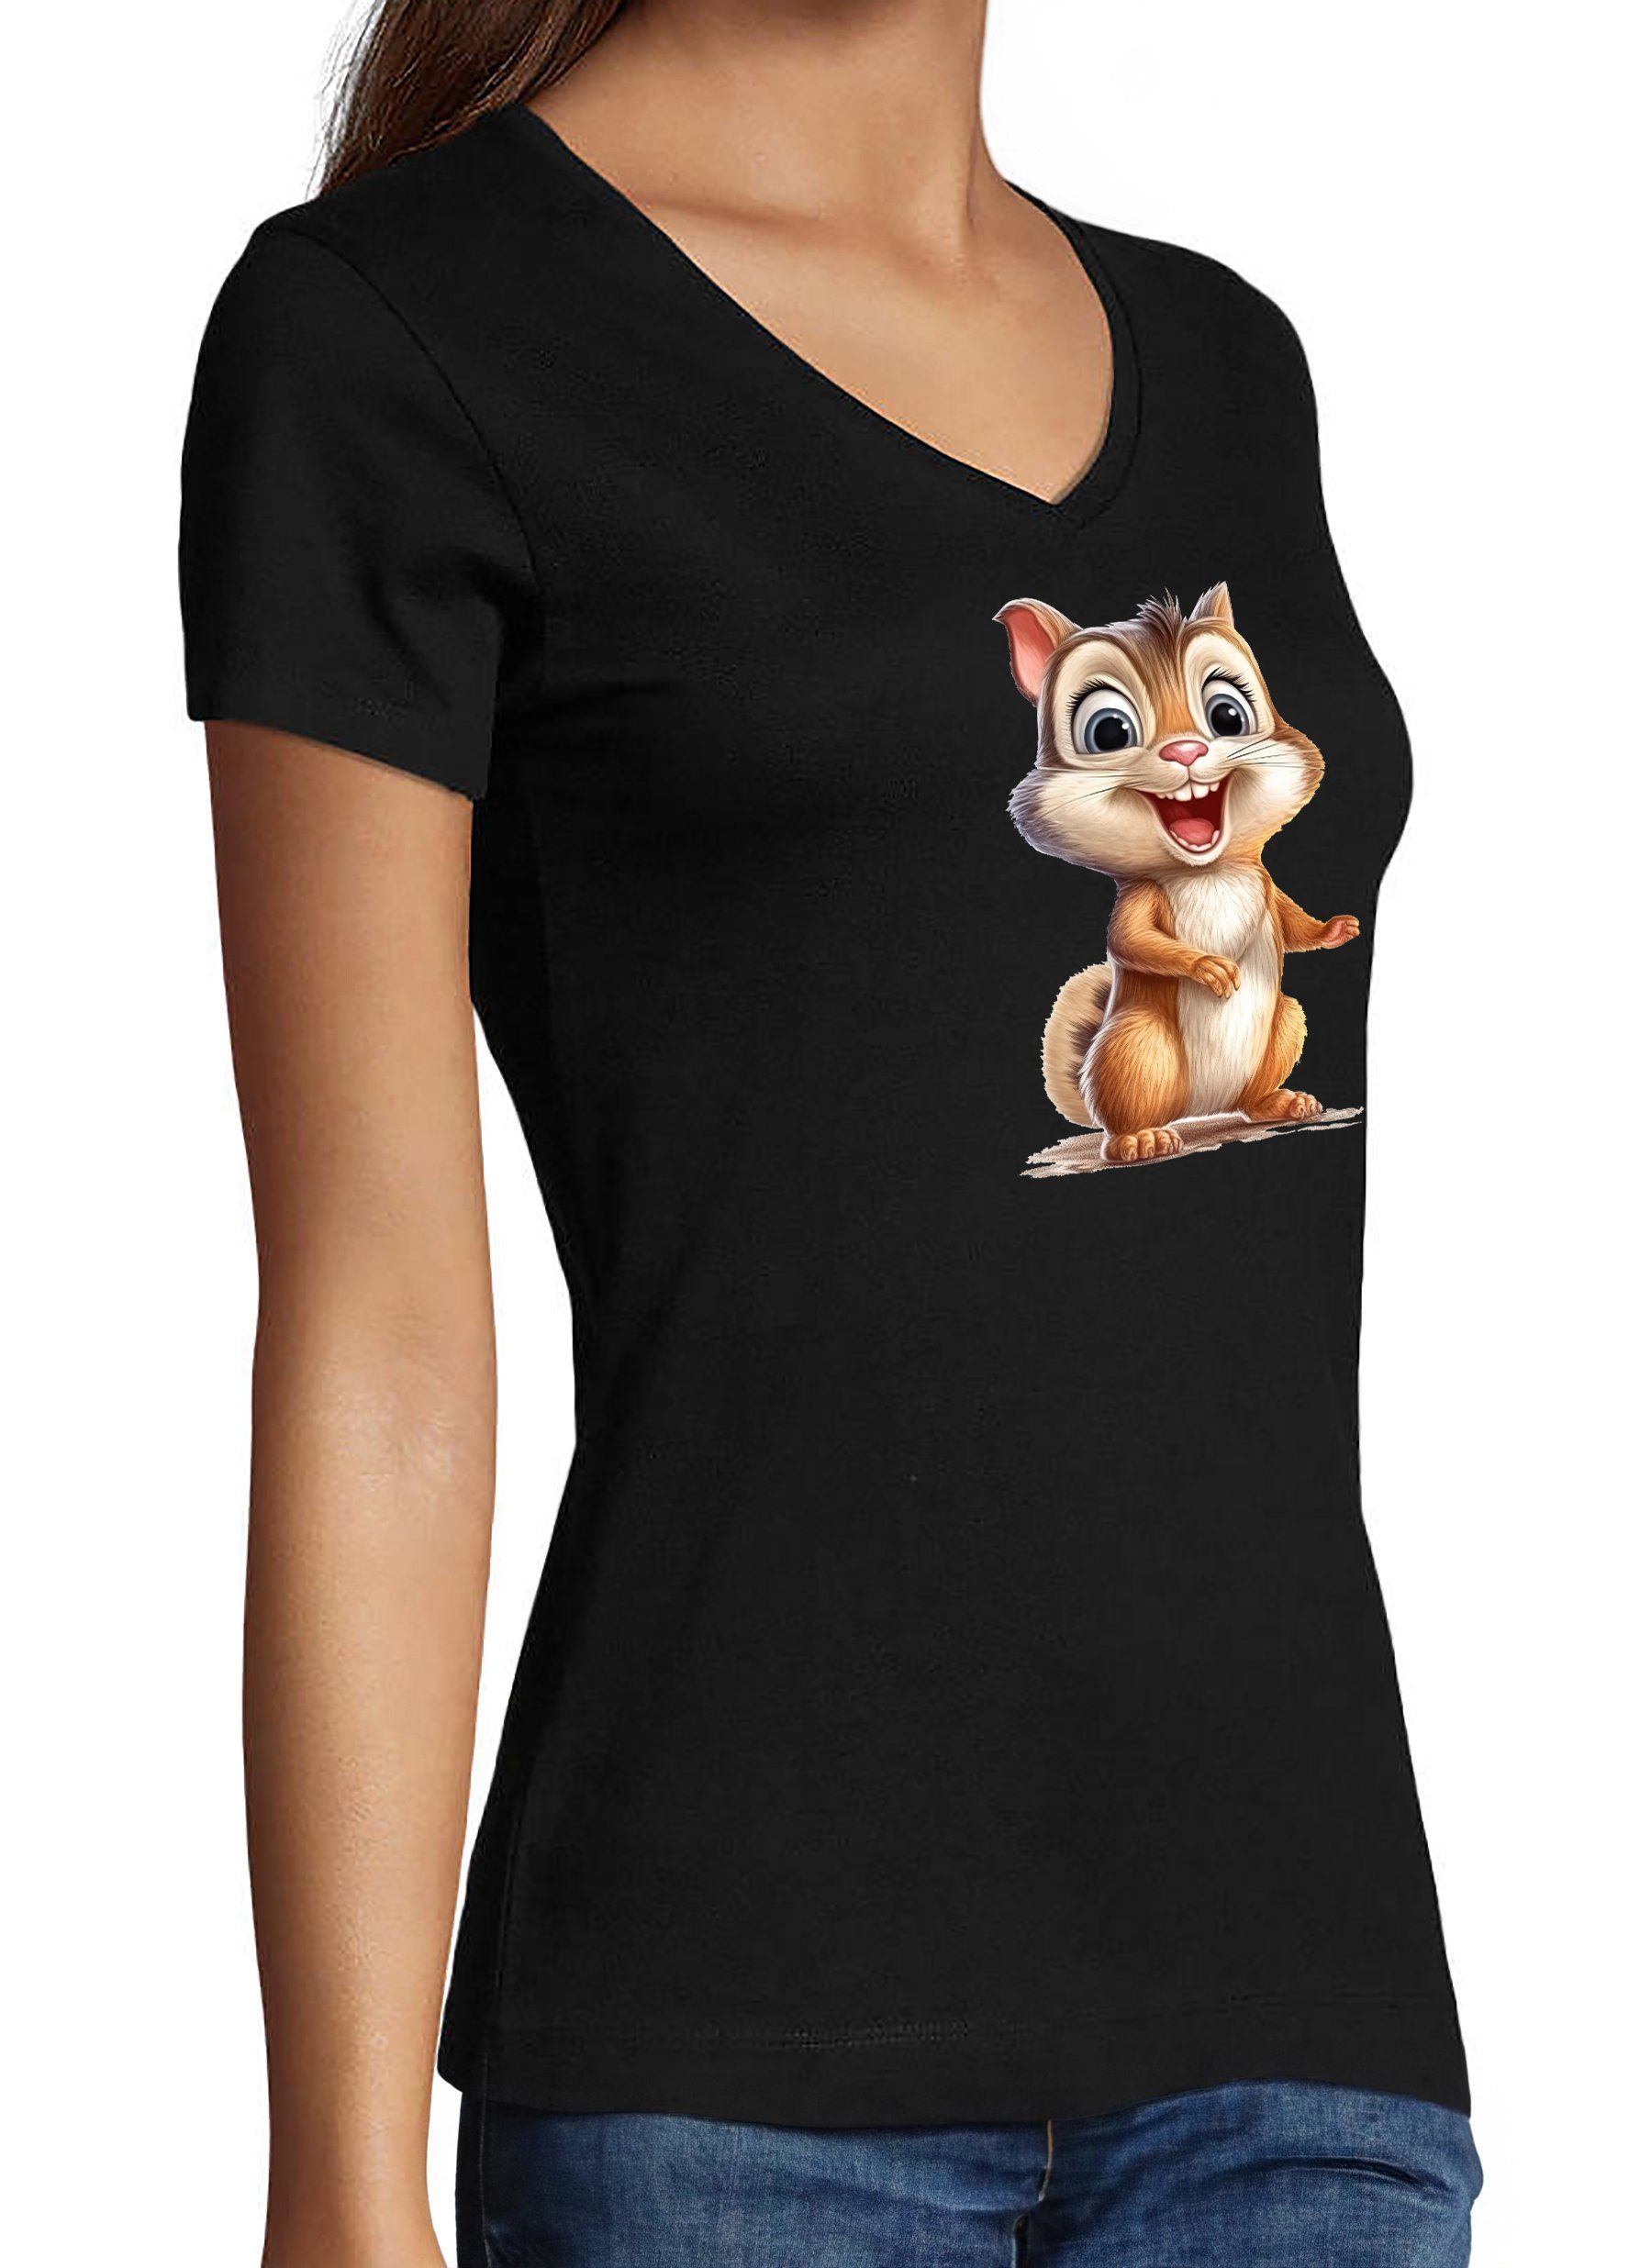 Print Baumwollshirt Damen Aufdruck Shirt MyDesign24 - mit i262 V-Ausschnitt schwarz Fit, Baby T-Shirt Eichhörnchen Wildtier Slim